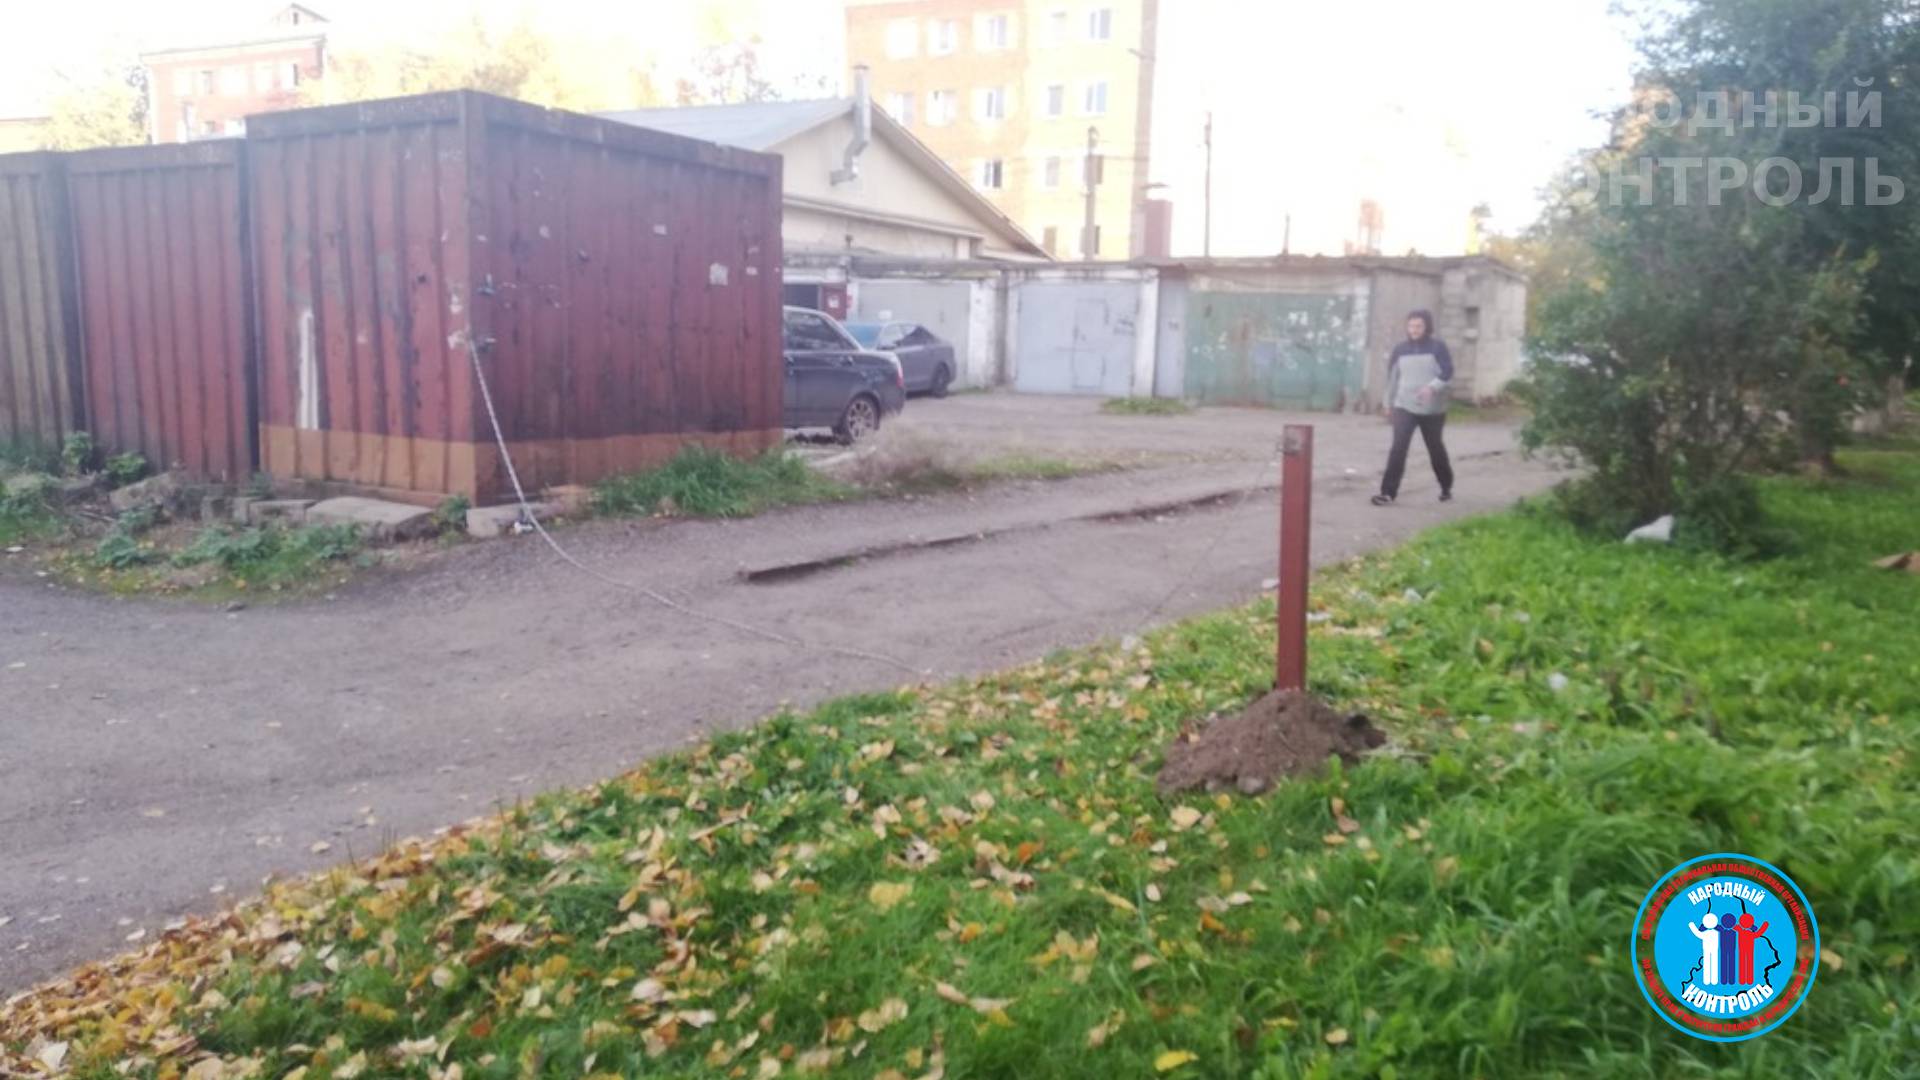 Неизвестные лица заблокировали и самовольно захватили парковочную территорию в Красноярске